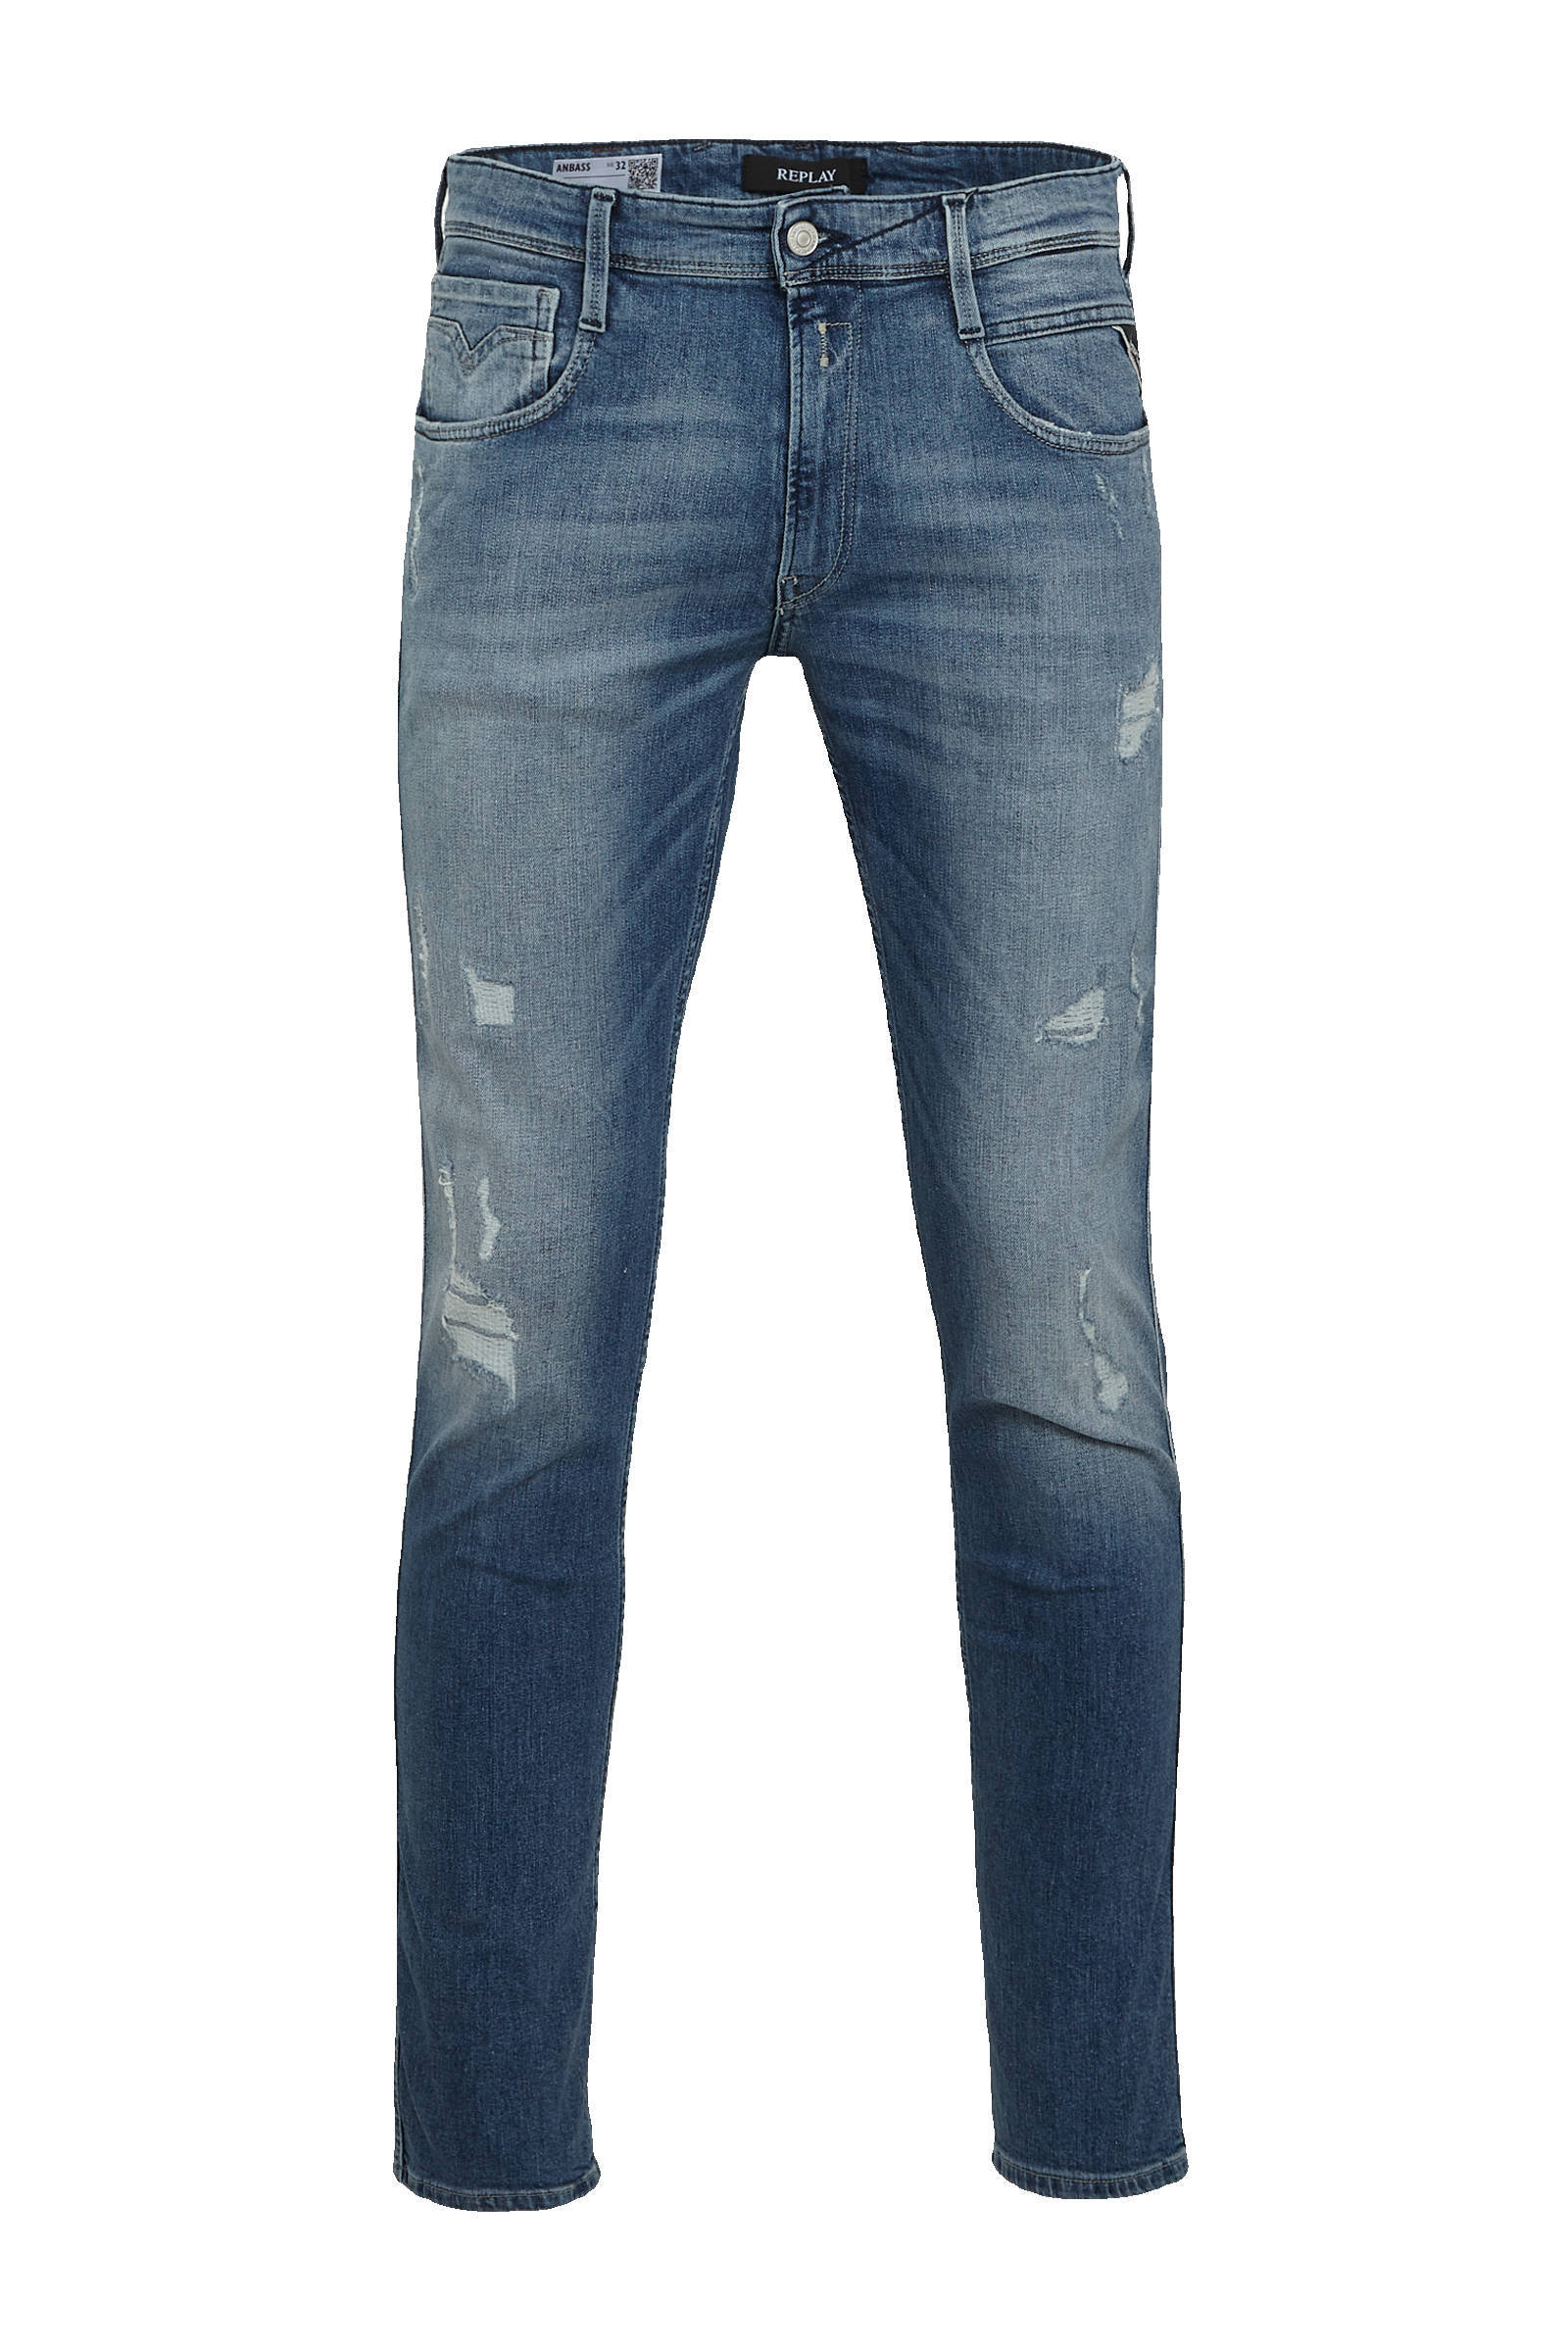 Replay Slim Fit Jeans Blauw Heren online kopen